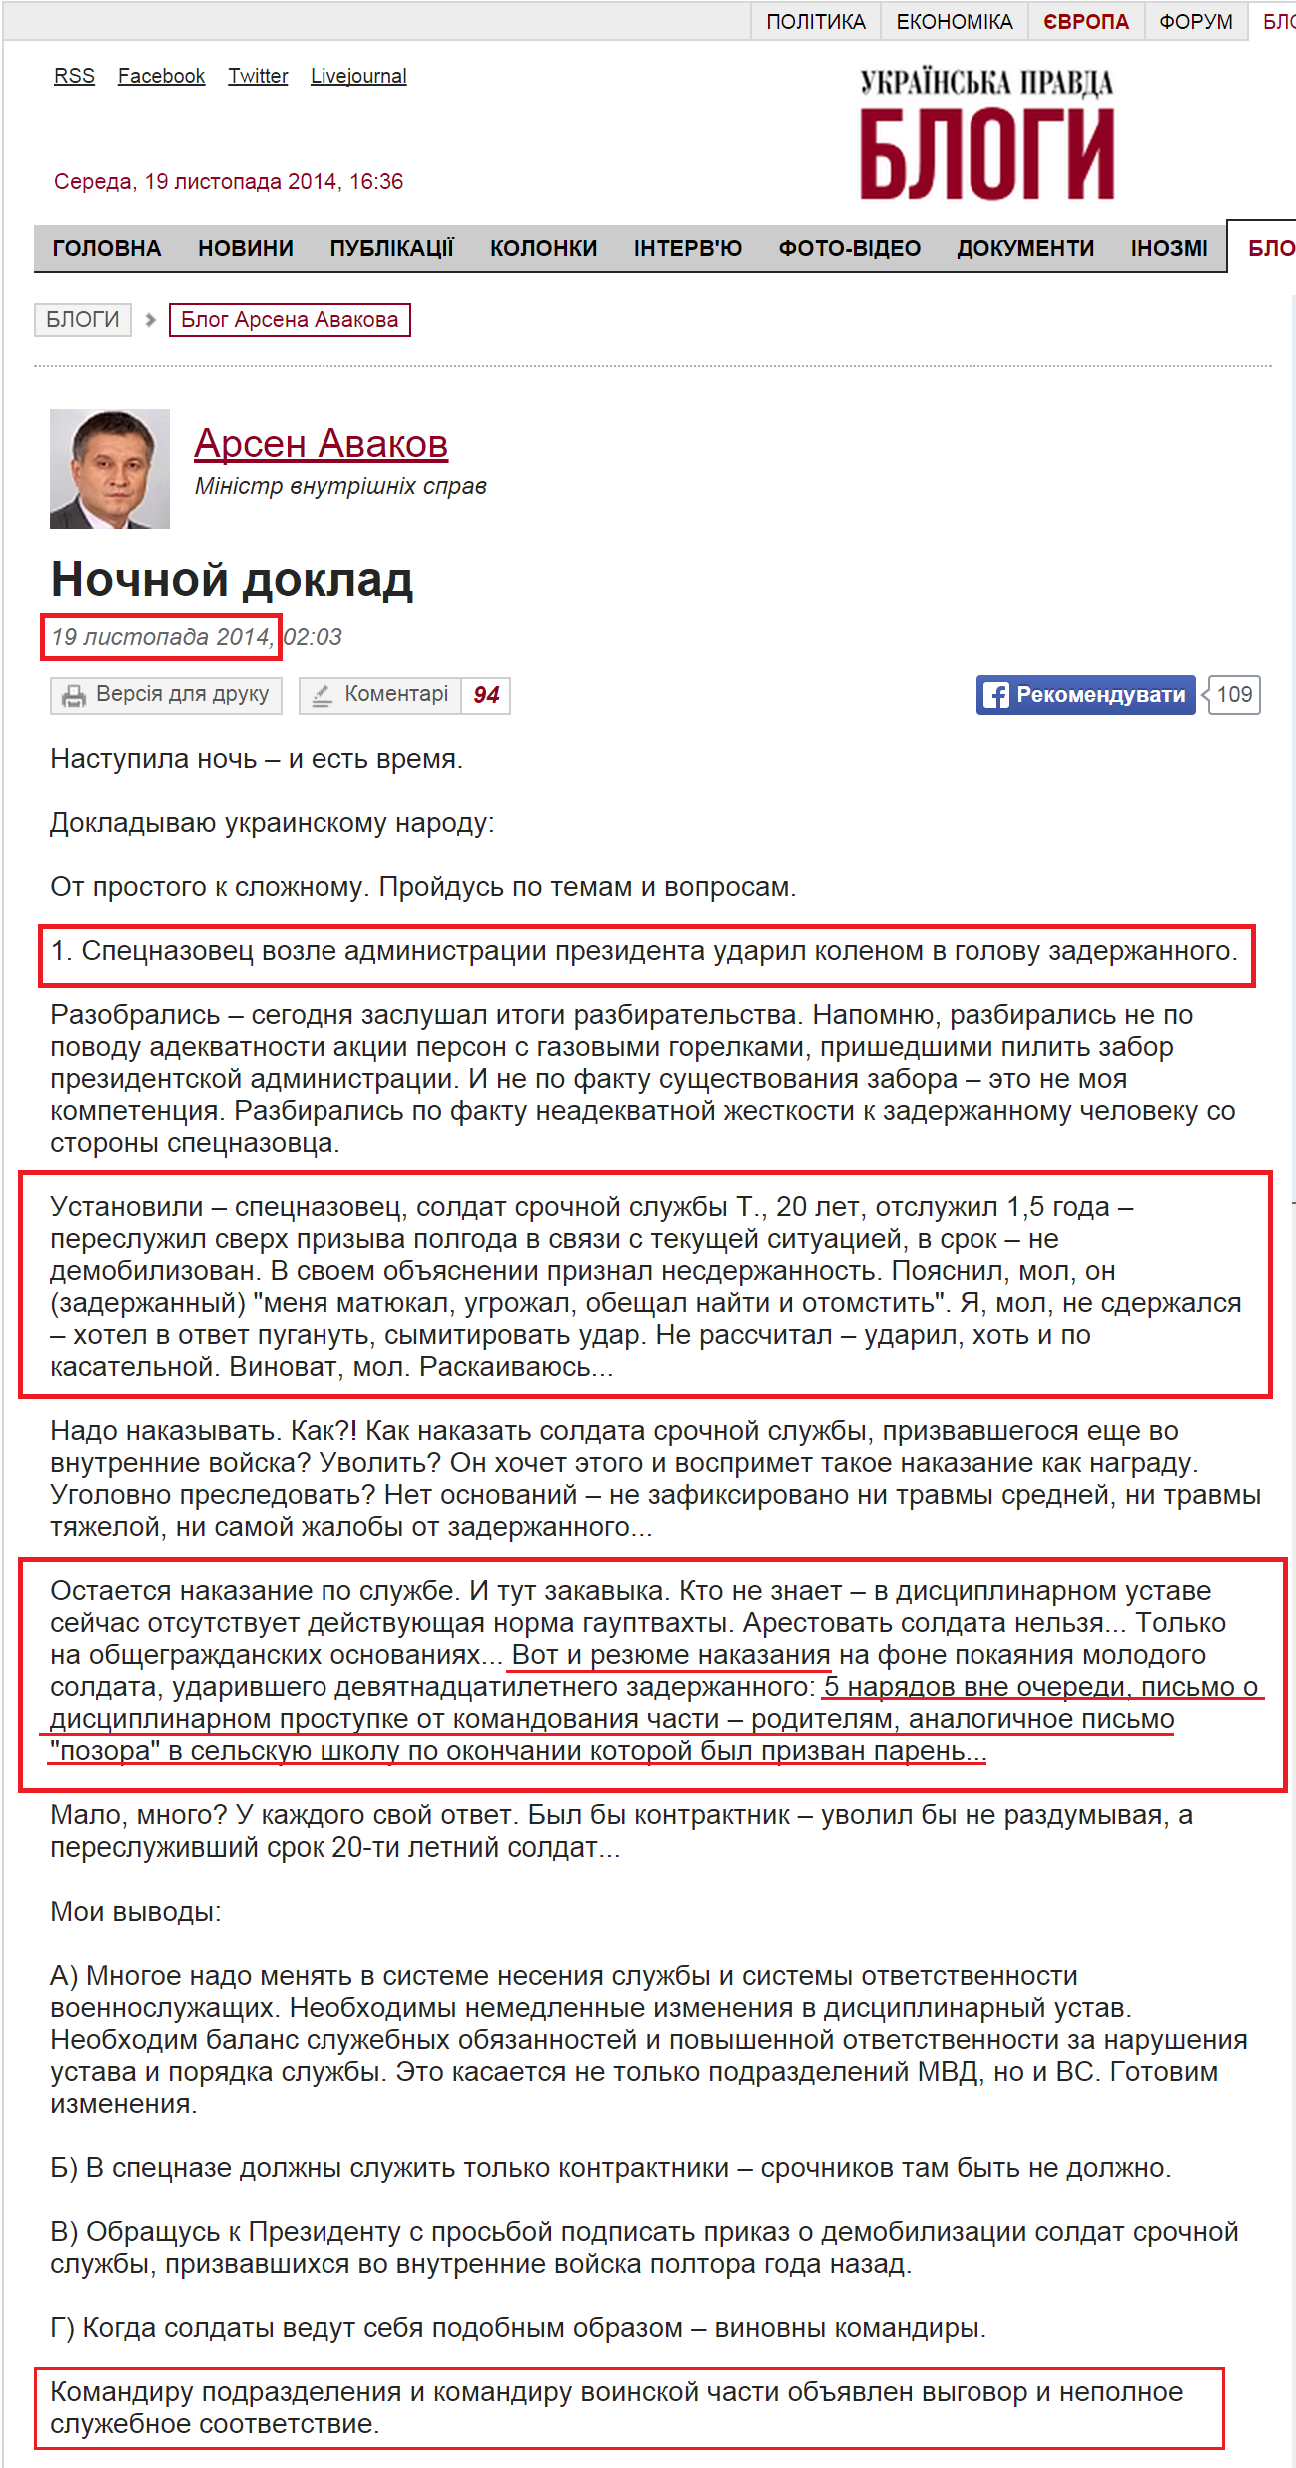 http://blogs.pravda.com.ua/authors/avakov/546bde66164a9/